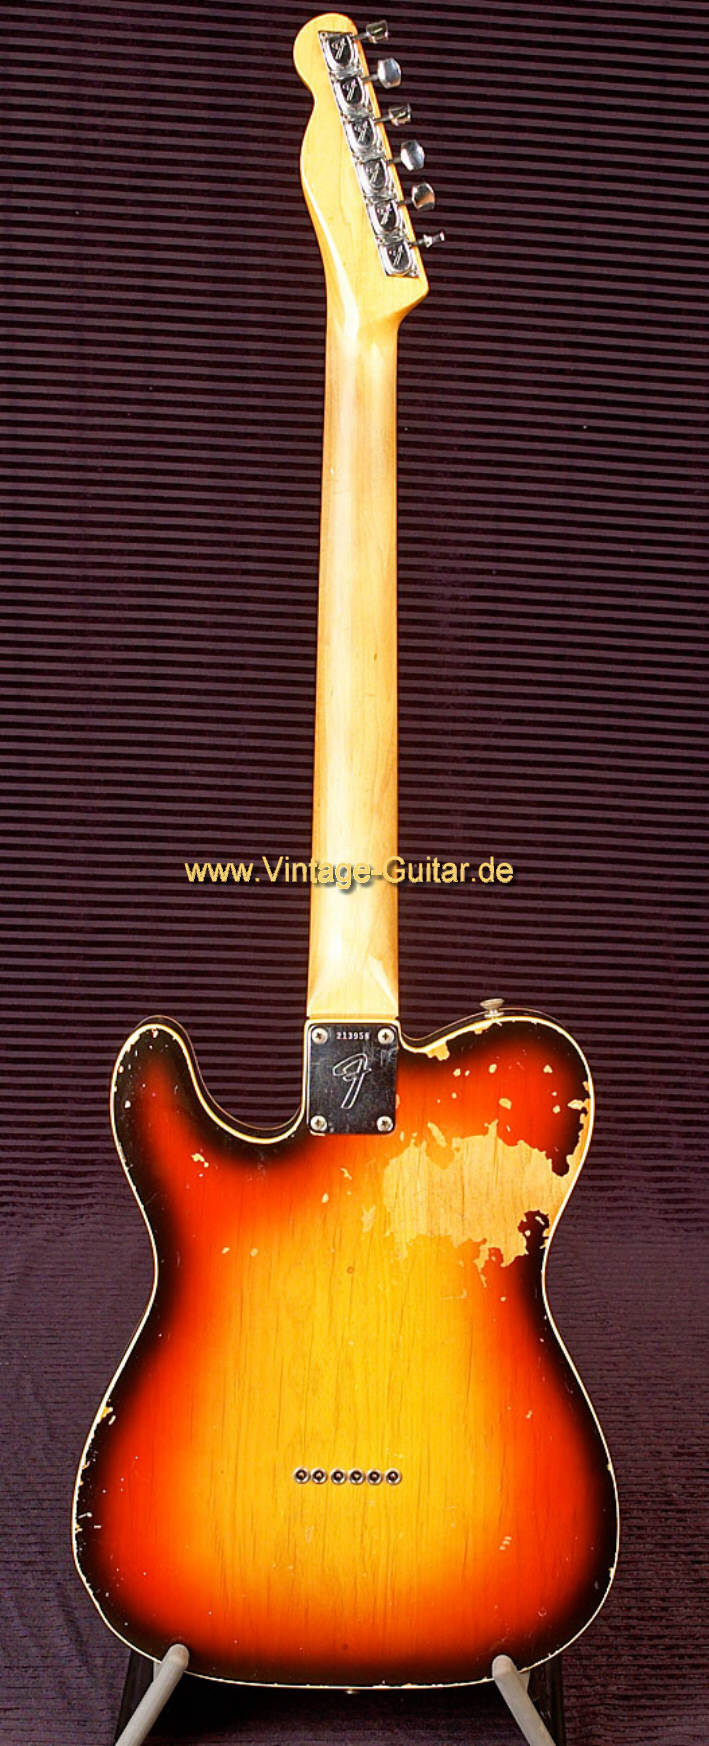 Fender-Telecaster-Custom-1968-sunburst-b.jpg